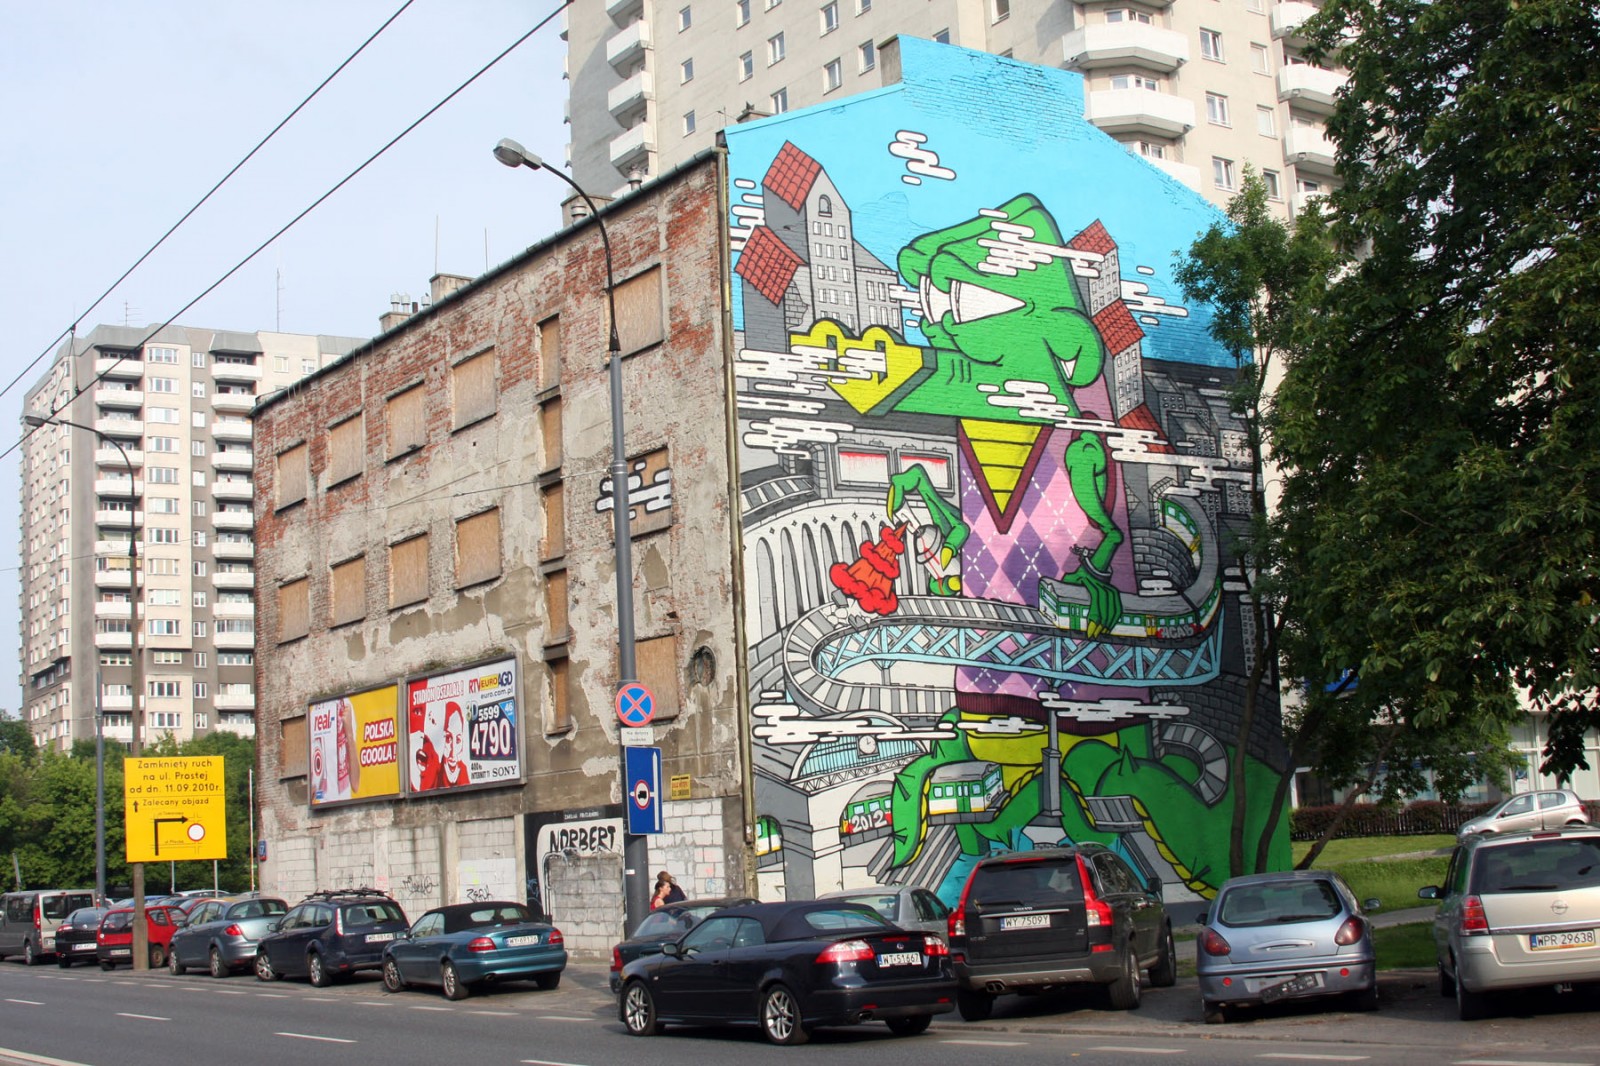 Ulica Wolska w Warszawie malowidło Krokodyl | Krokodyl | Backstage